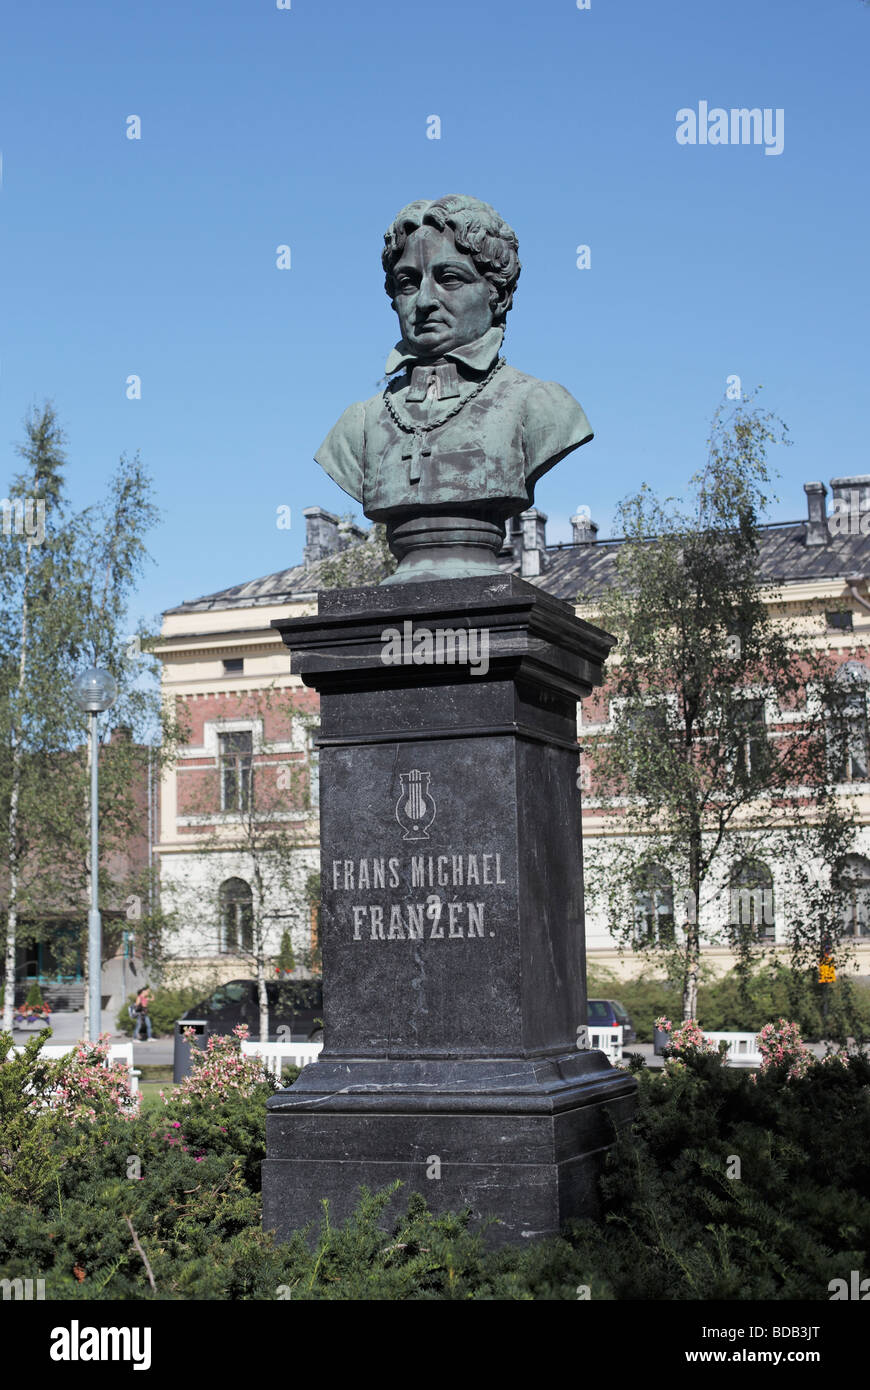 Statue de Frans Michael Franzén situé à Oulu Finlanc Banque D'Images